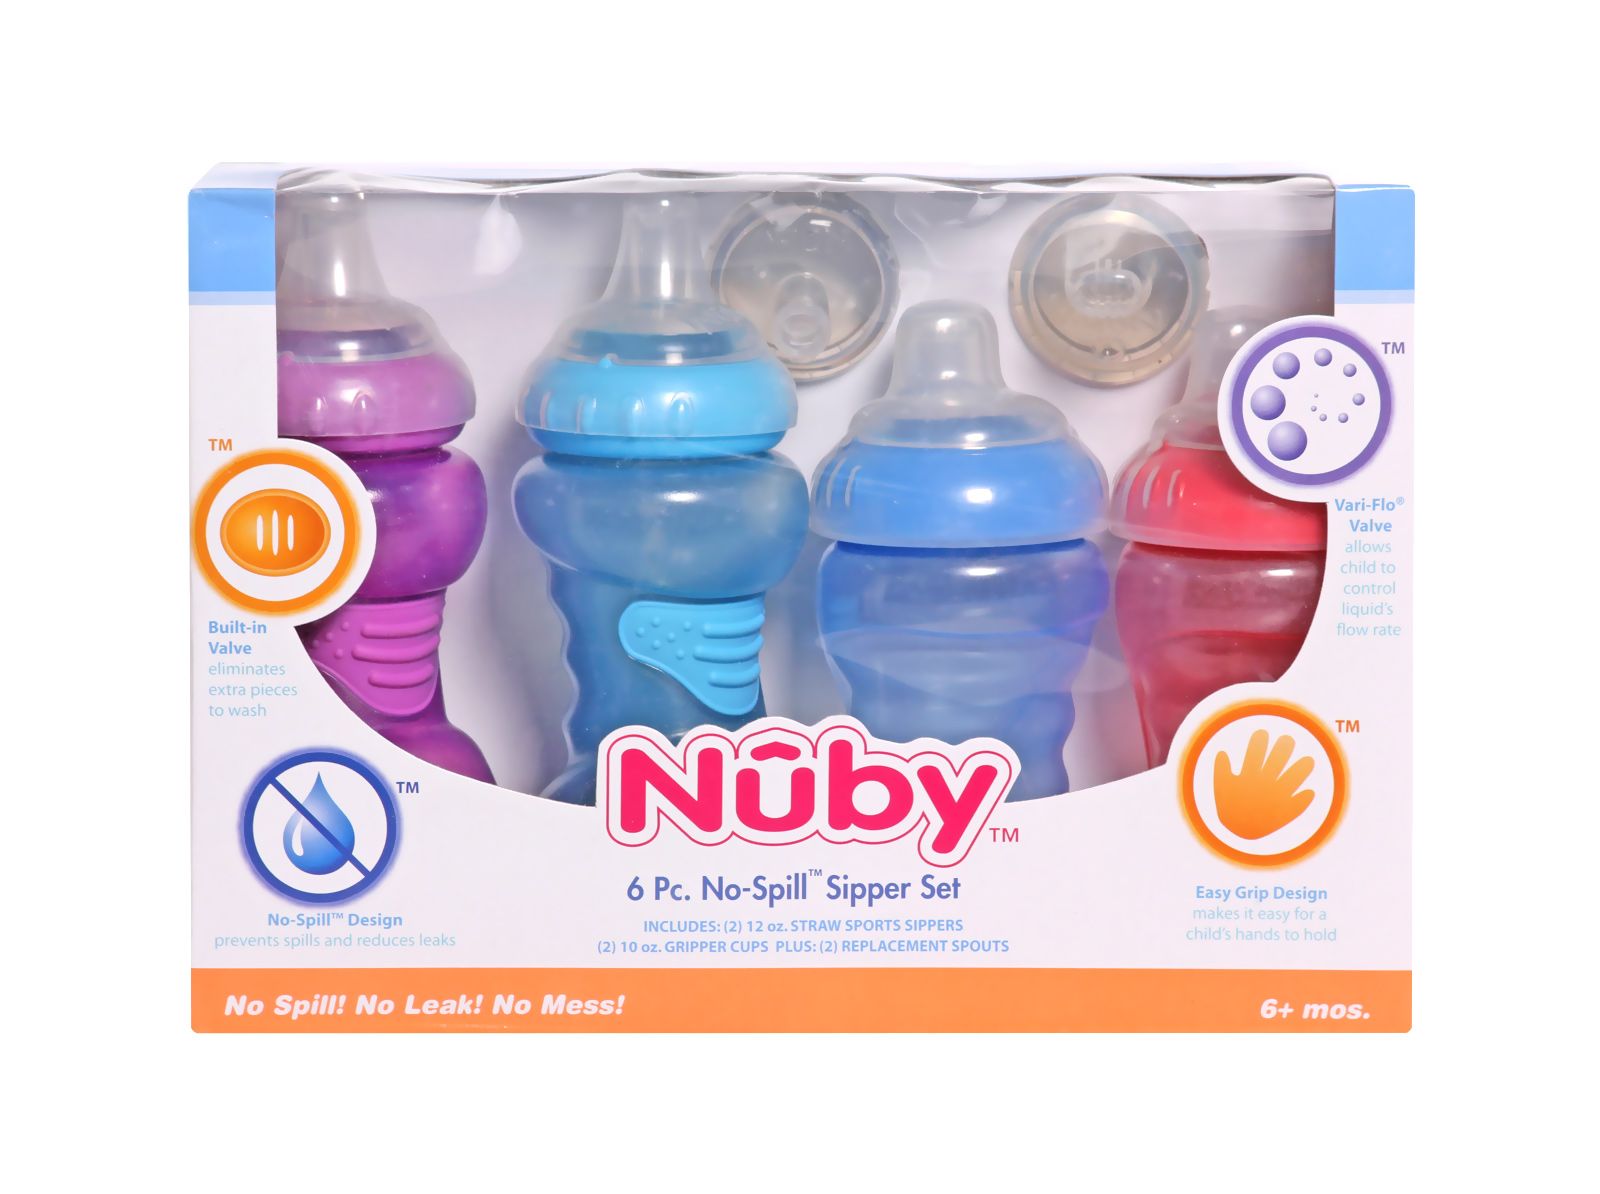 Nuby - 6 Piece No-Spill Sipper Set